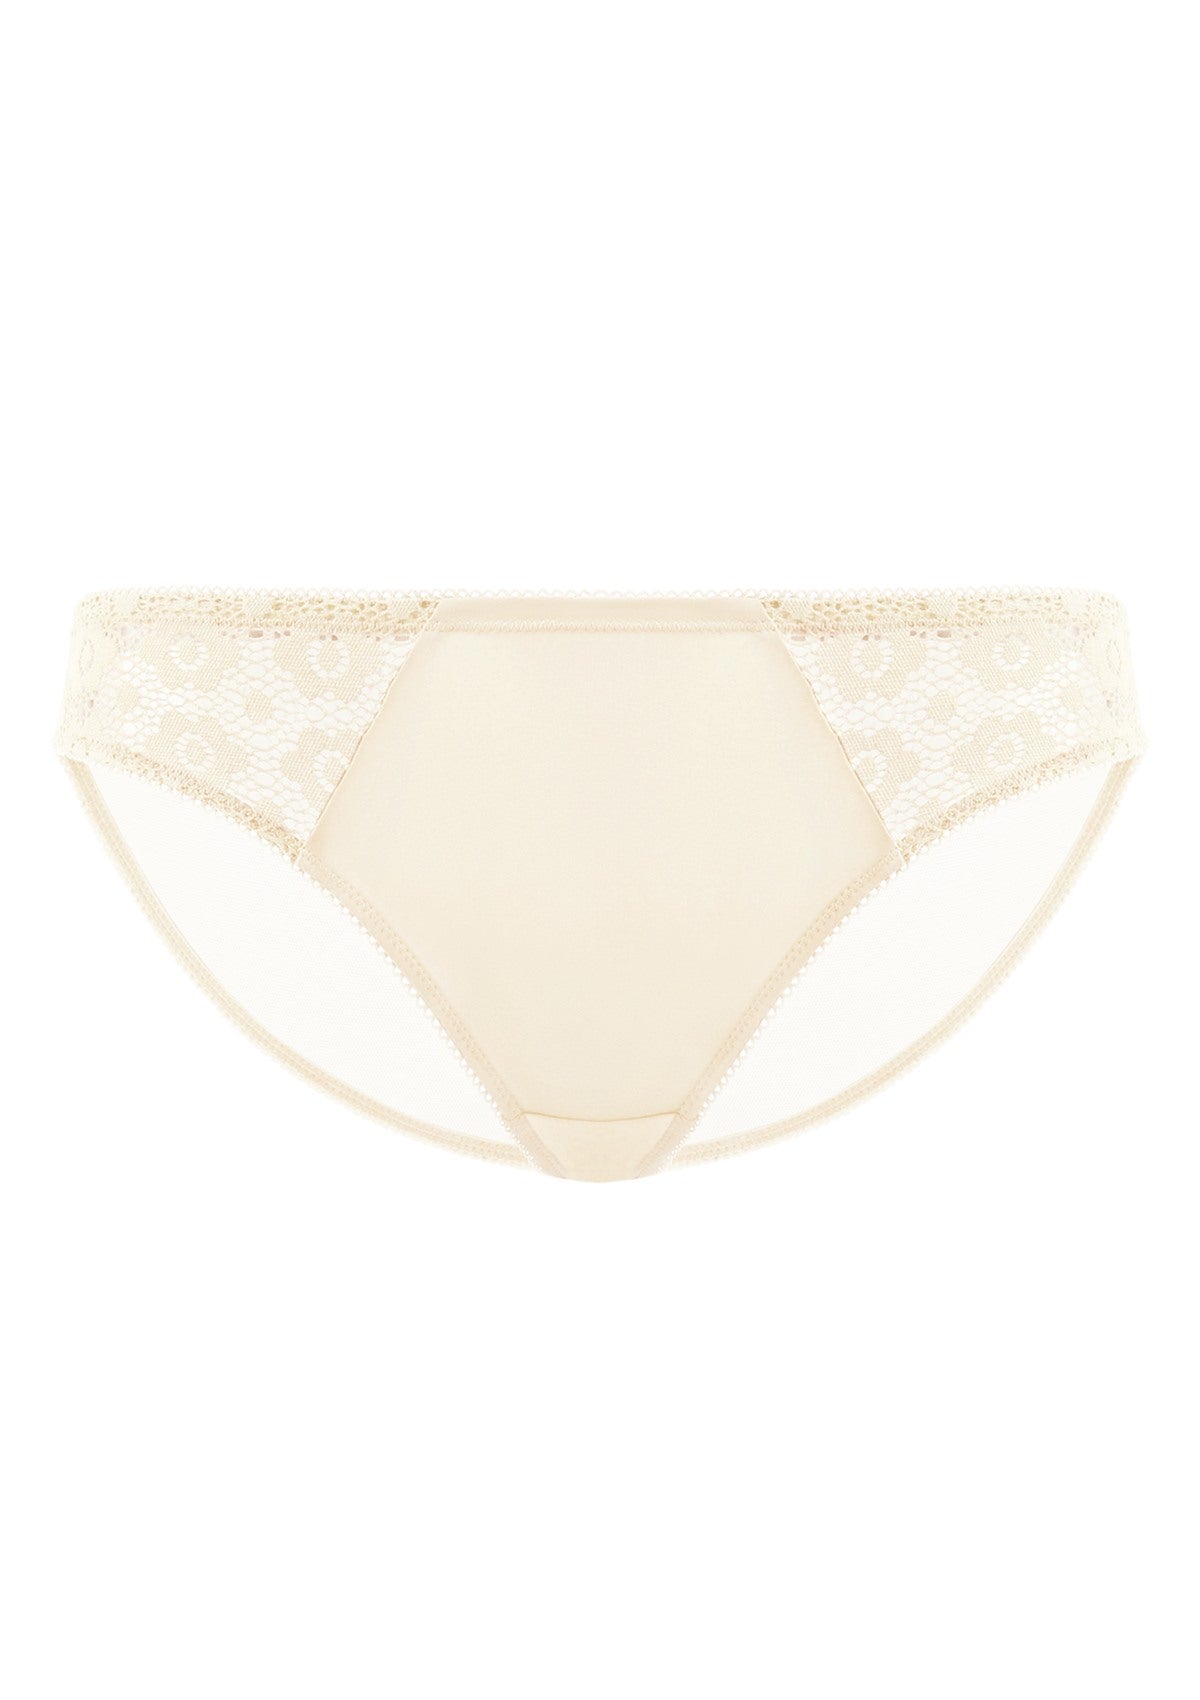 HSIA Serena Comfortable Trendy Lace Trim Bikini Underwear - XXL / Nude